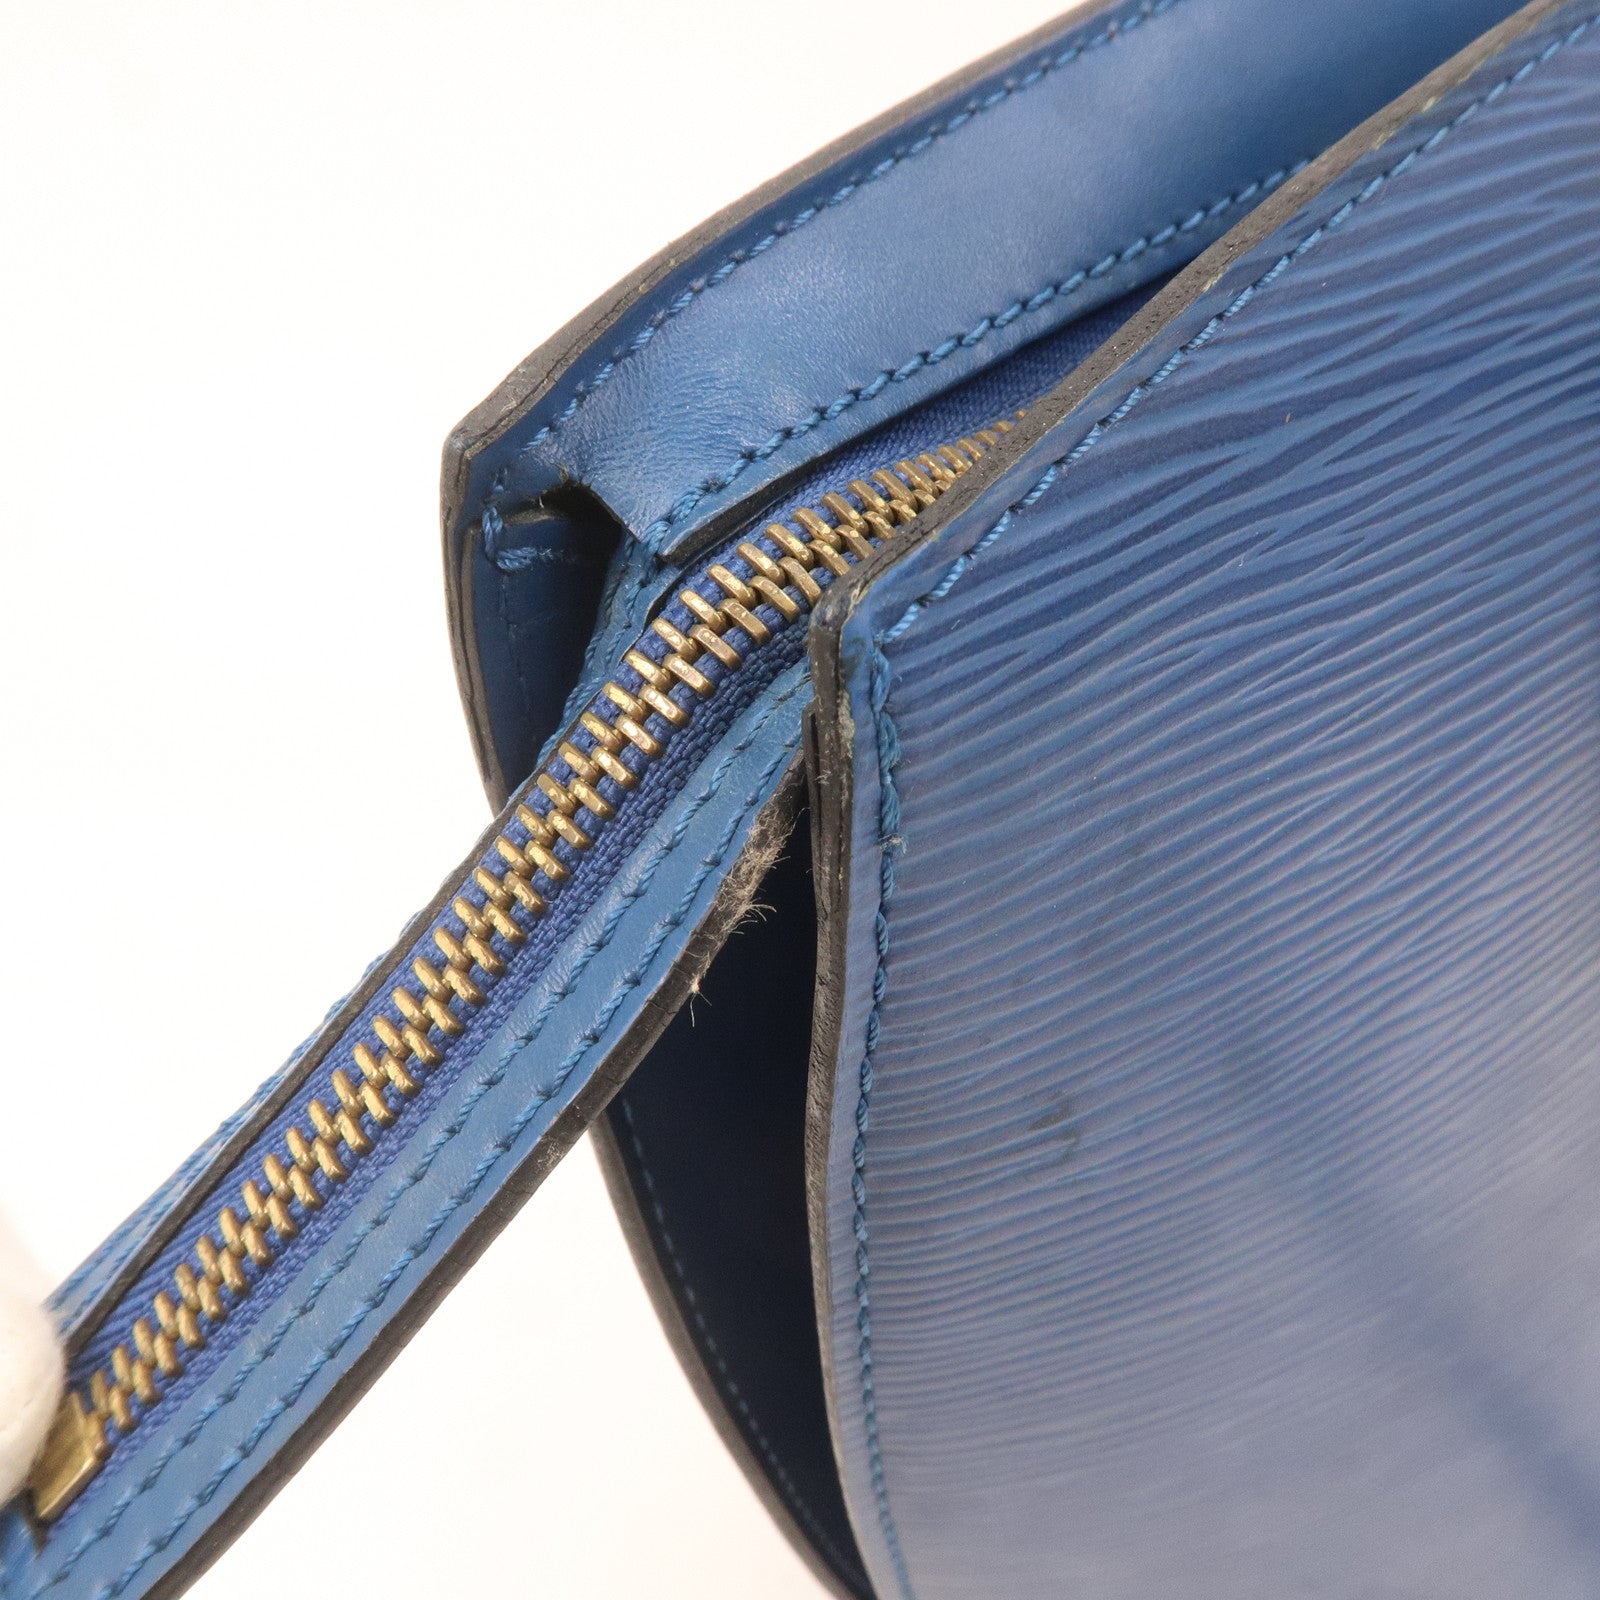 Louis-Vuitton Epi Saint-Jacques Shopping Shoulder Bag